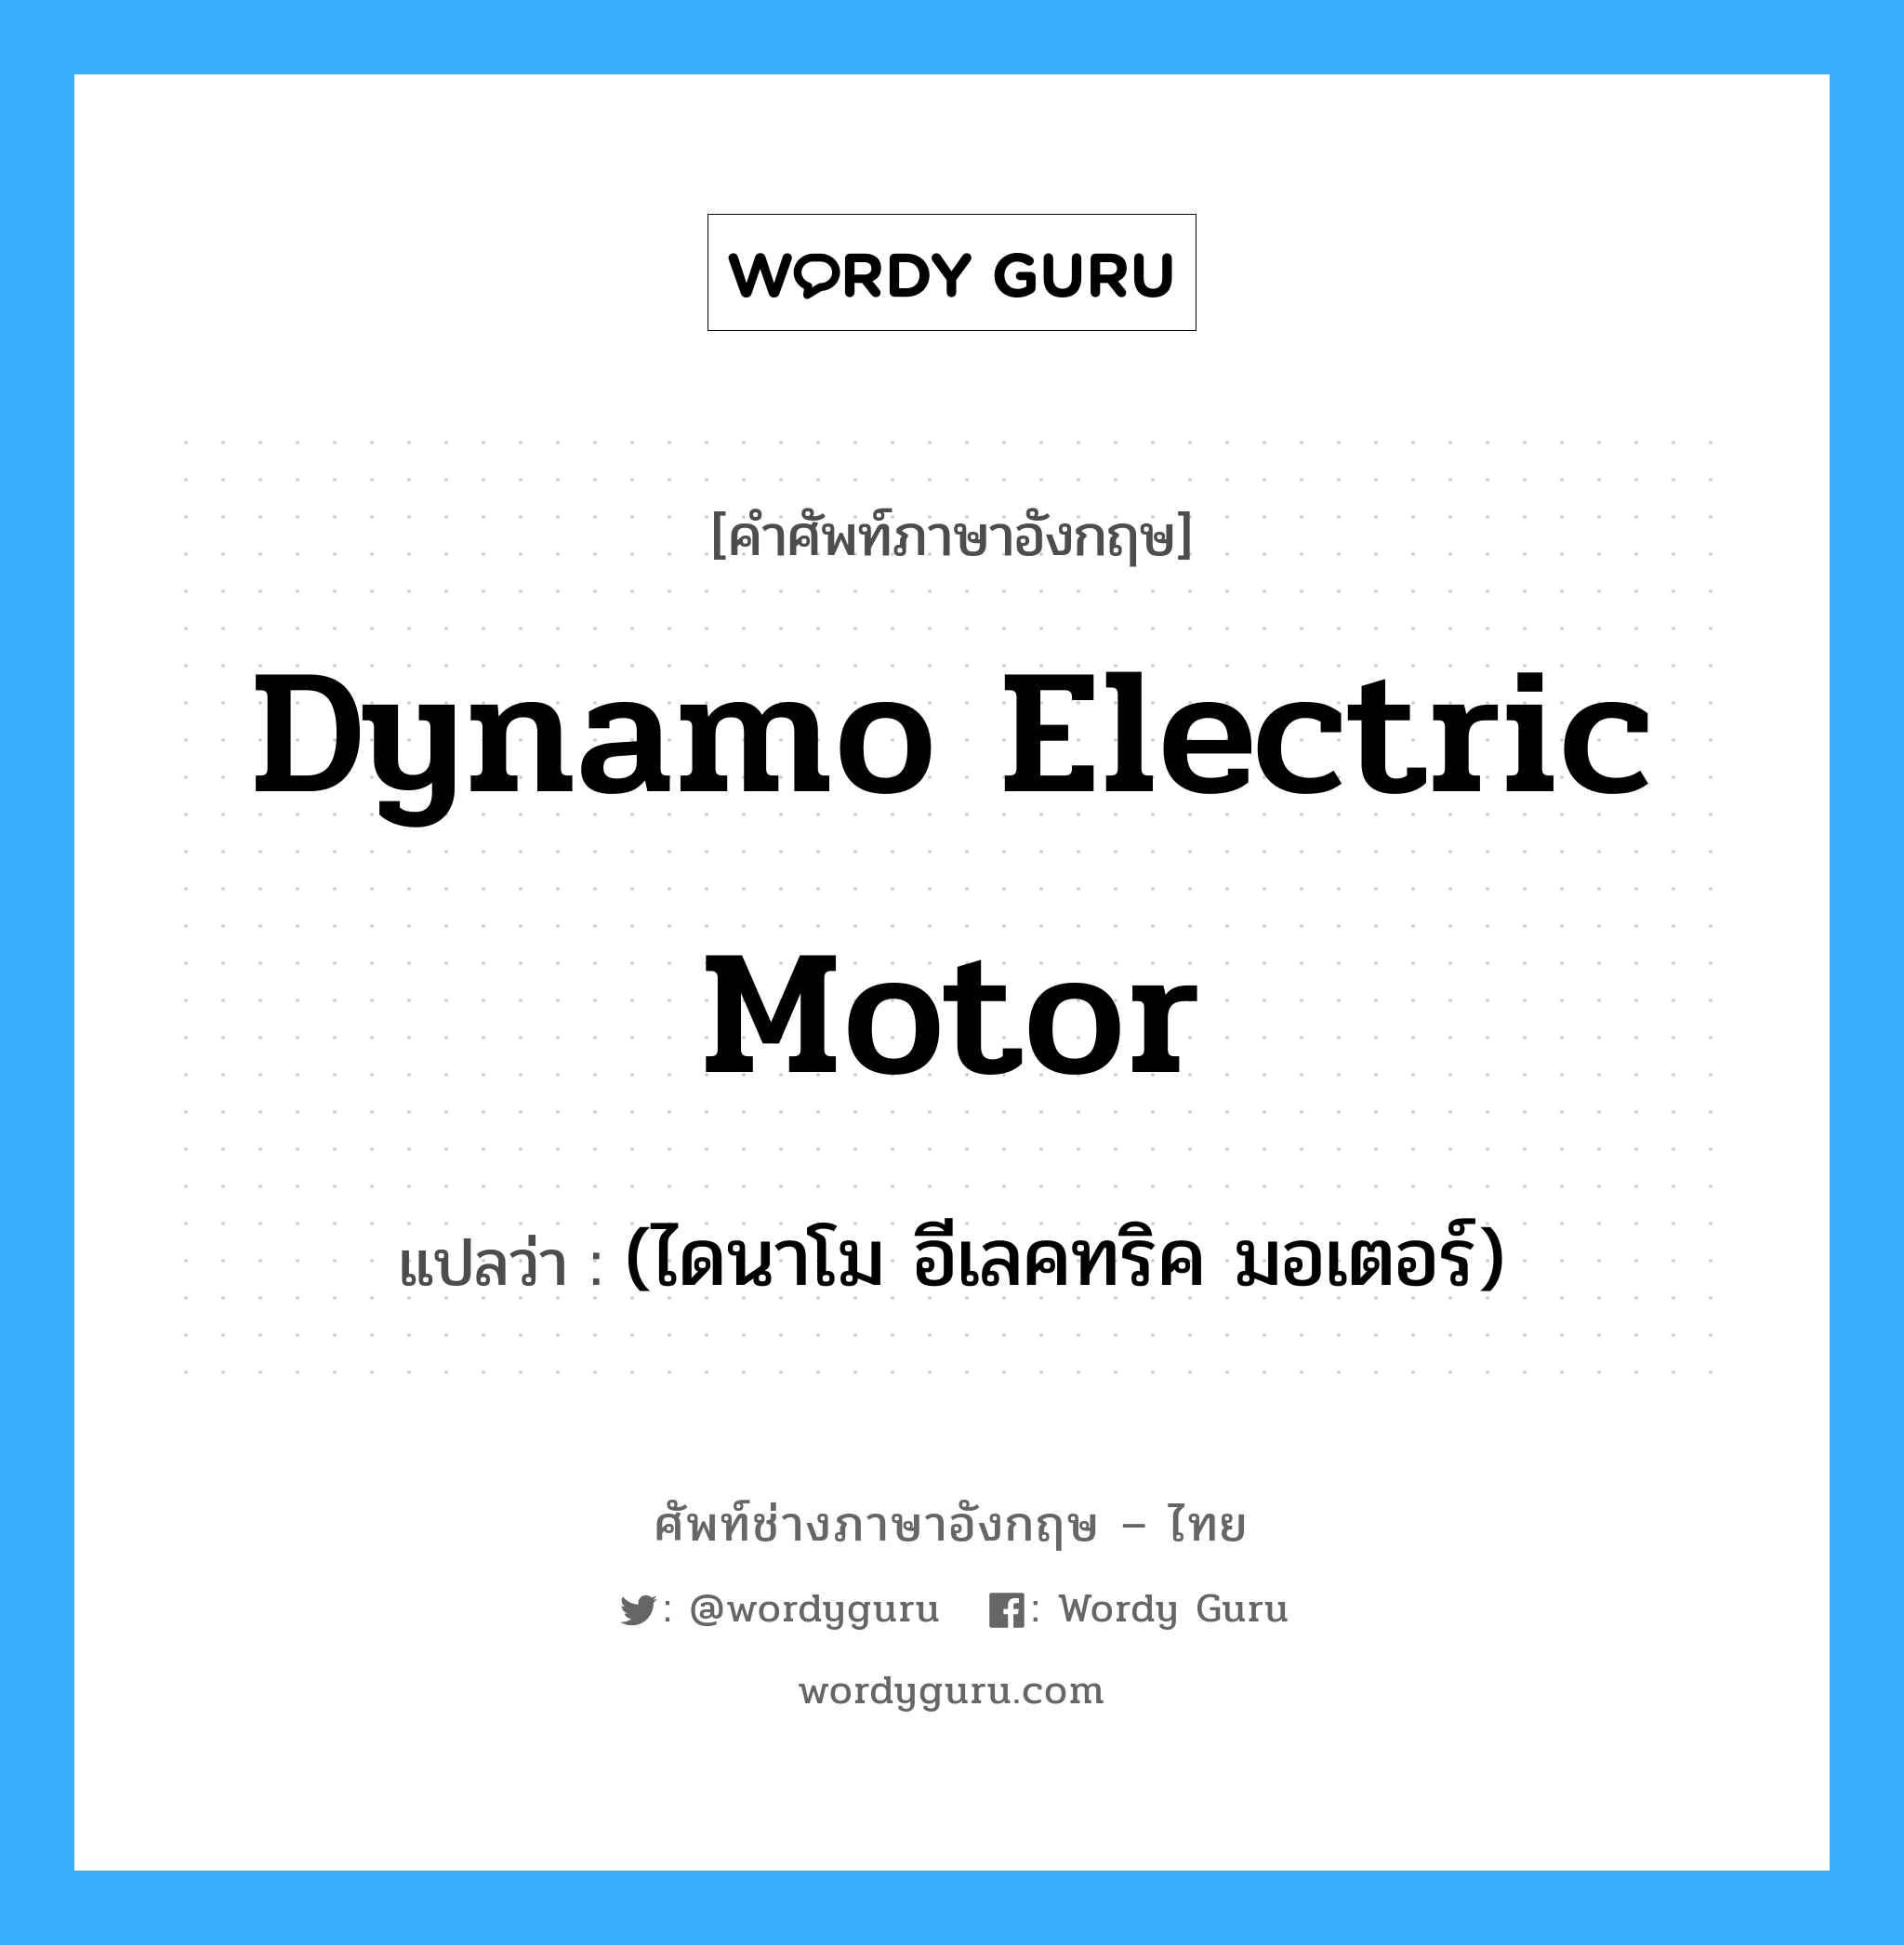 (ไดนาโม อีเลคทริค มอเตอร์) ภาษาอังกฤษ?, คำศัพท์ช่างภาษาอังกฤษ - ไทย (ไดนาโม อีเลคทริค มอเตอร์) คำศัพท์ภาษาอังกฤษ (ไดนาโม อีเลคทริค มอเตอร์) แปลว่า dynamo electric motor